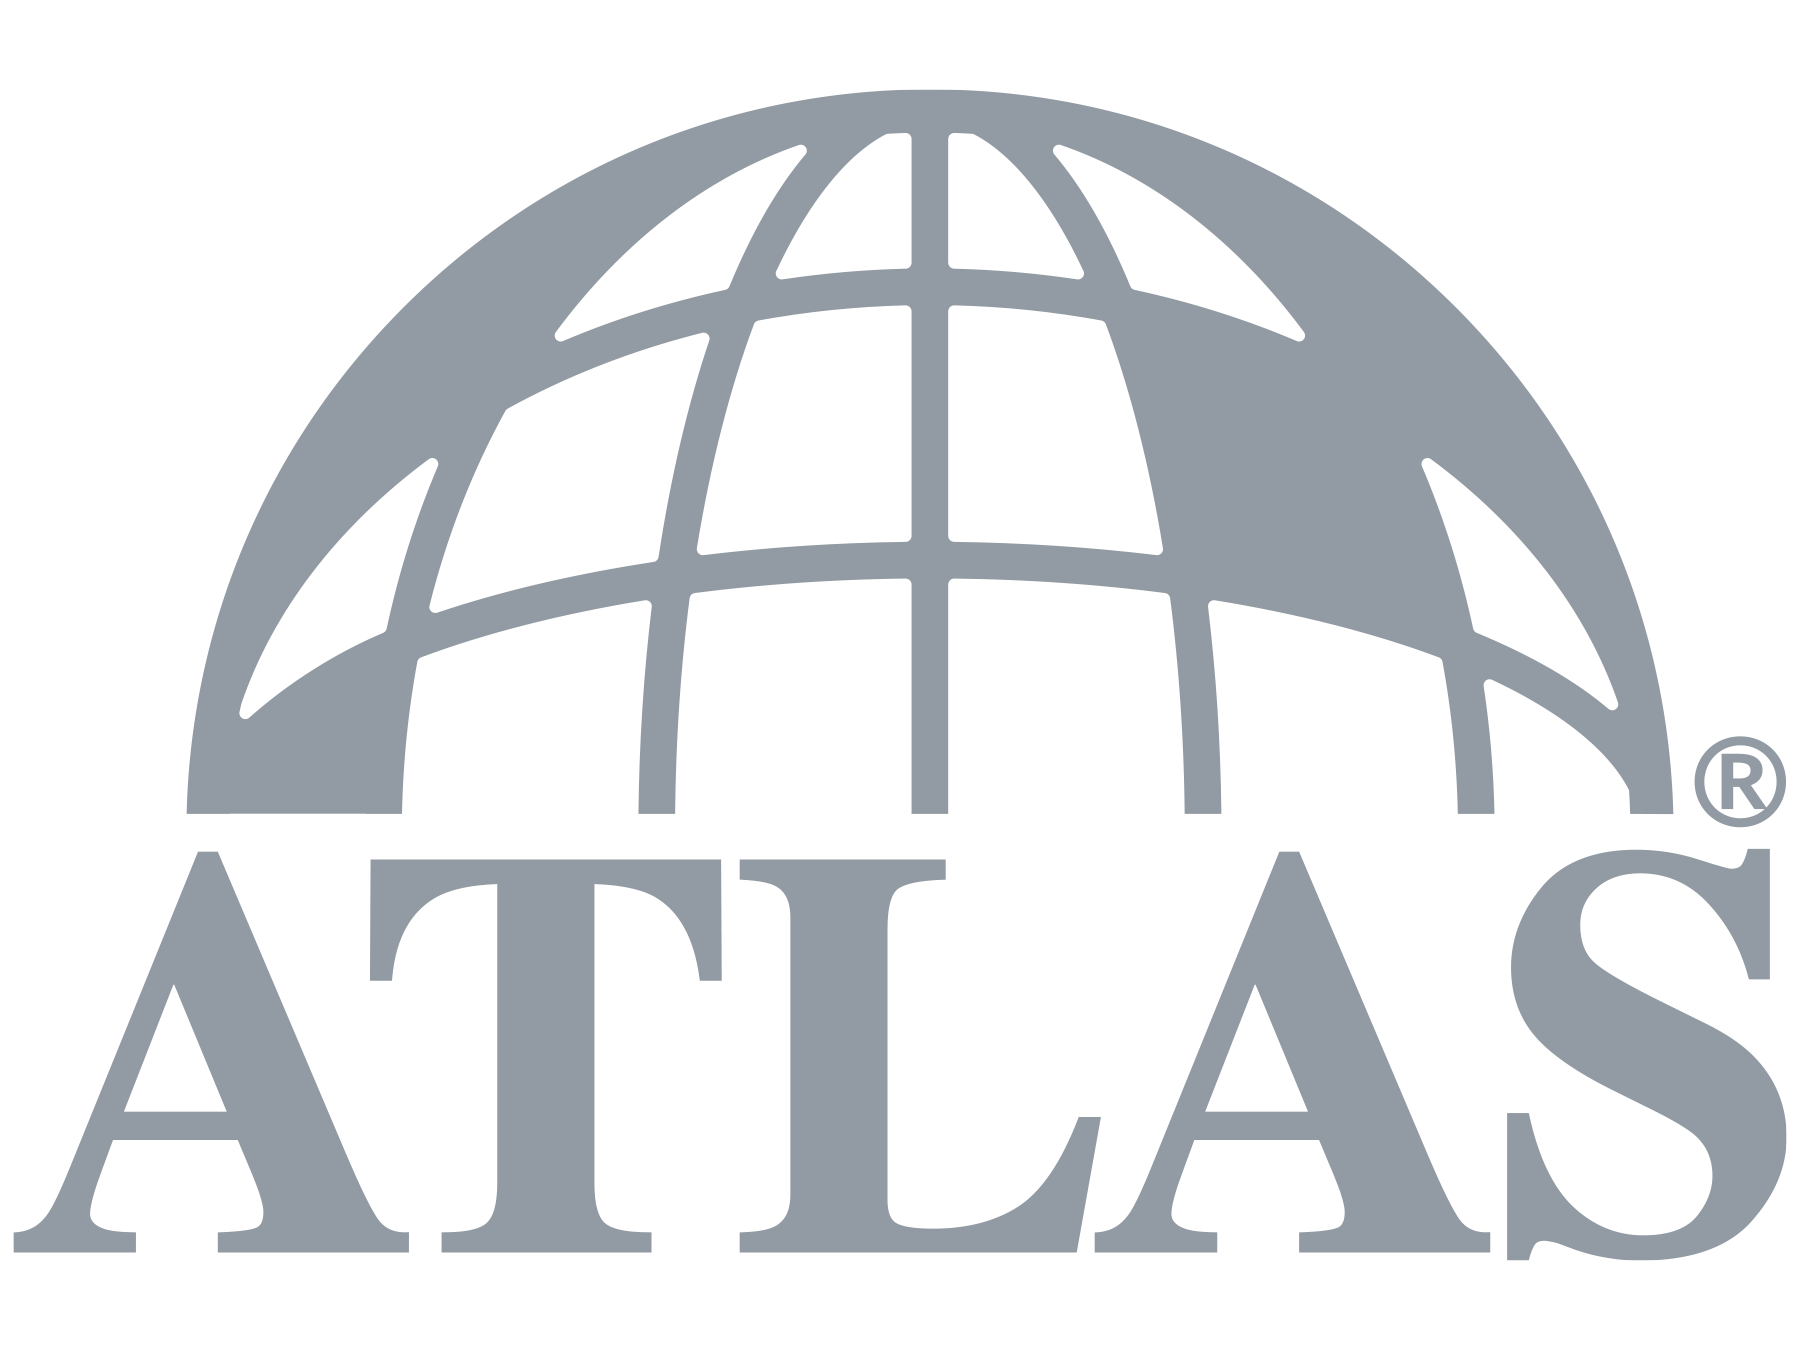 logo-atlas-eps-no-text